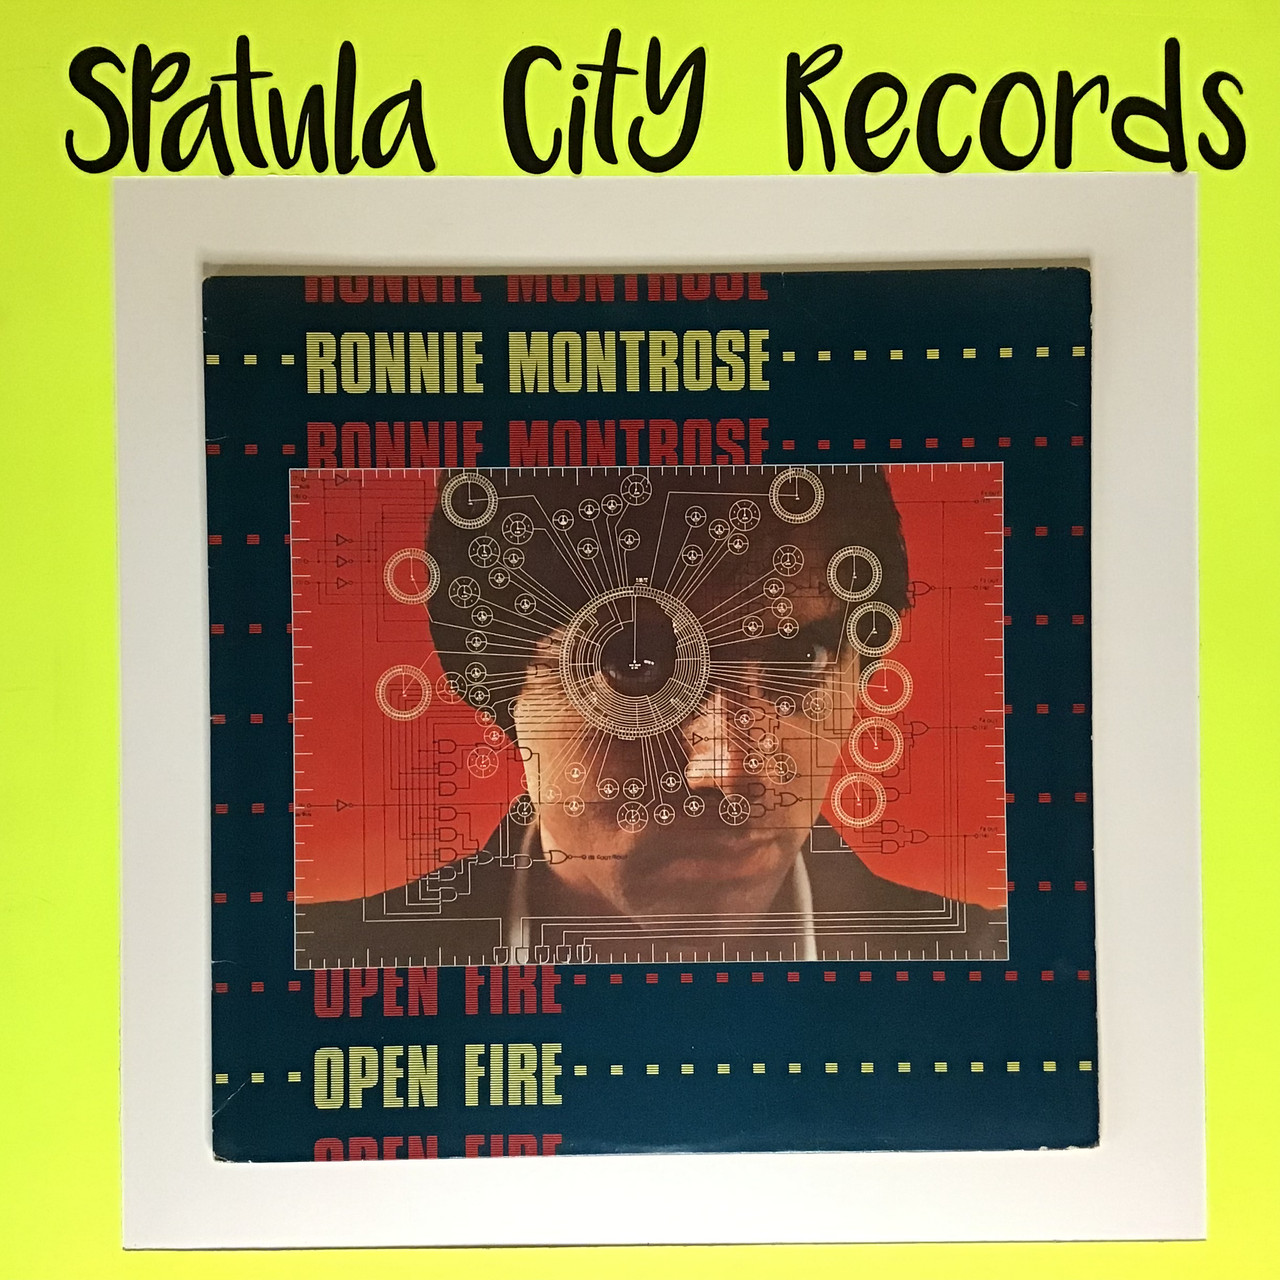 Ronnie Montrose - Open Fire - vinyl record album LP